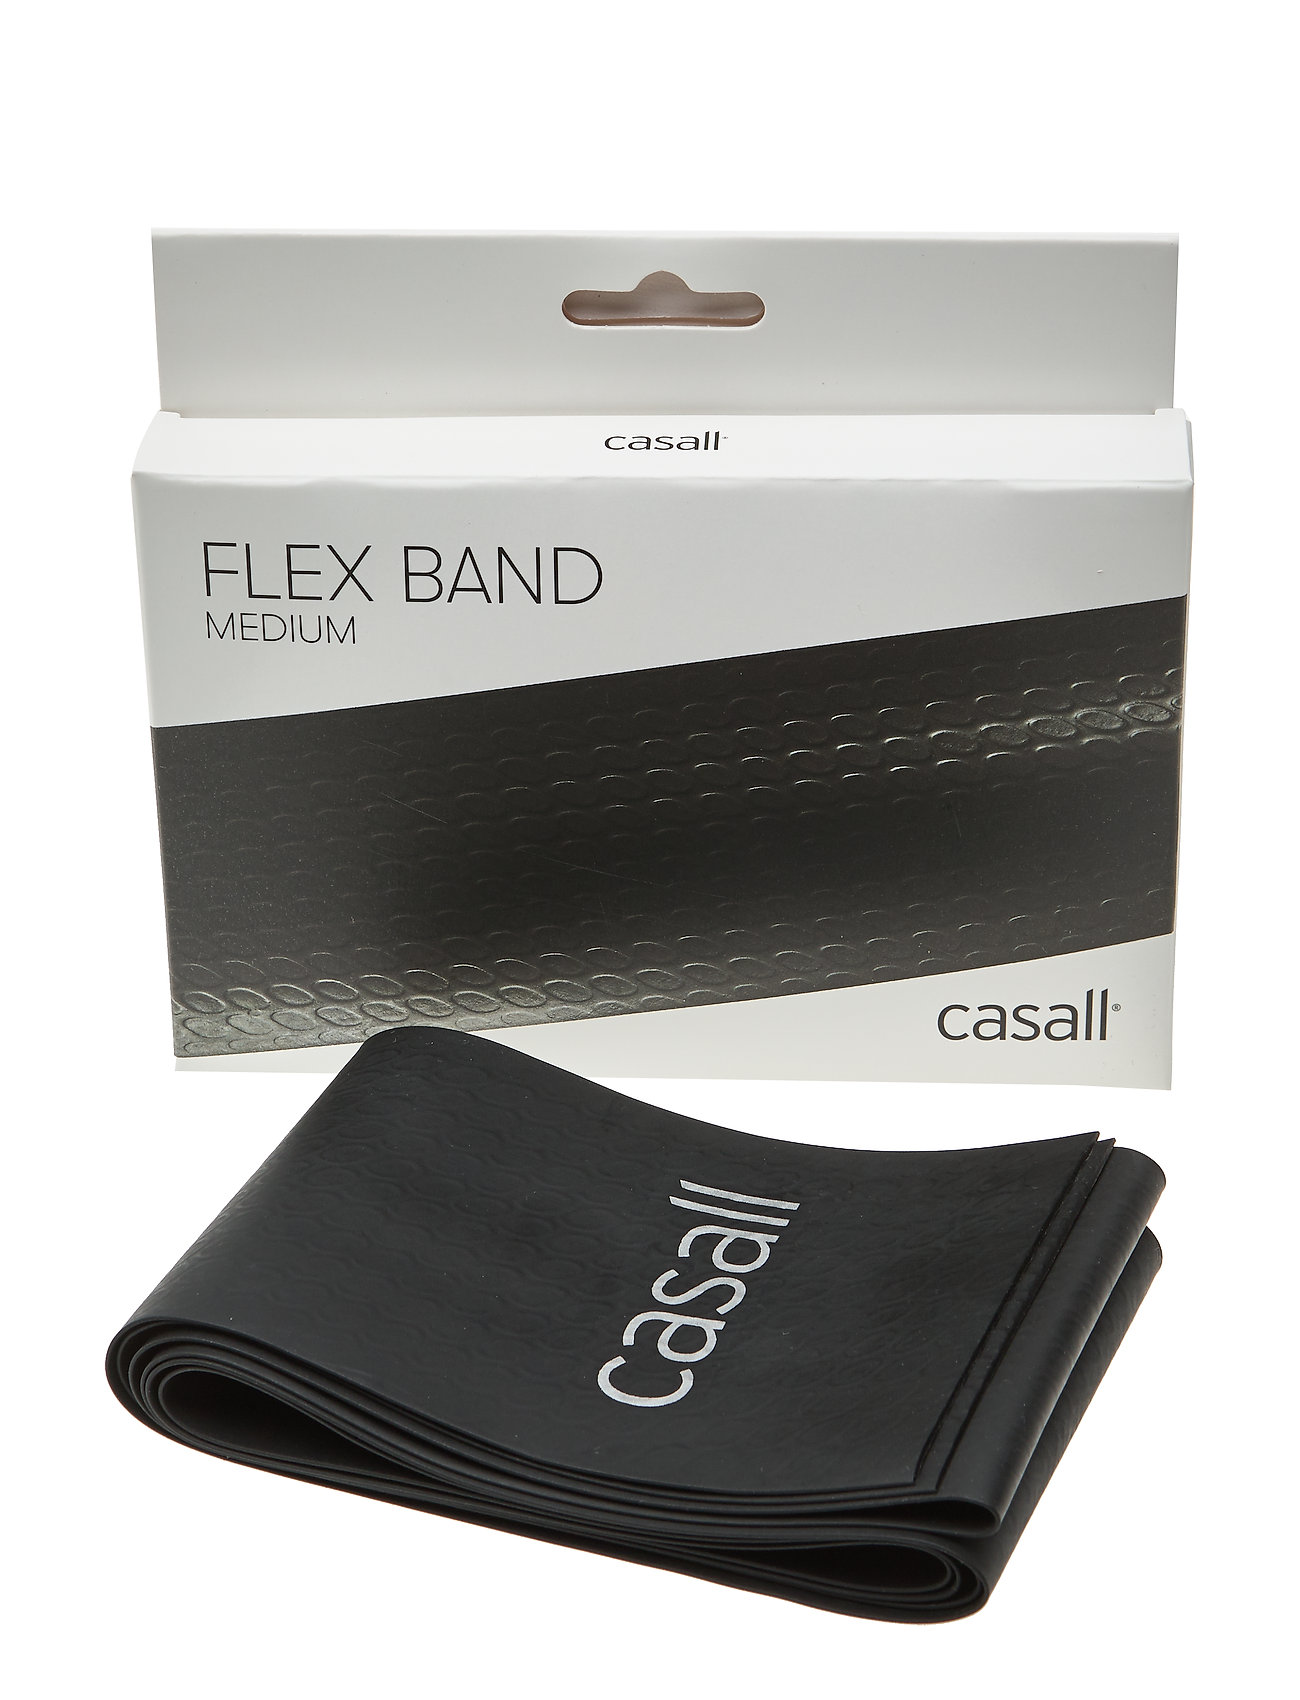 Flex Band Medium 1pcs Accessories Sports Equipment Workout Equipment Resistance Bands Musta Casall